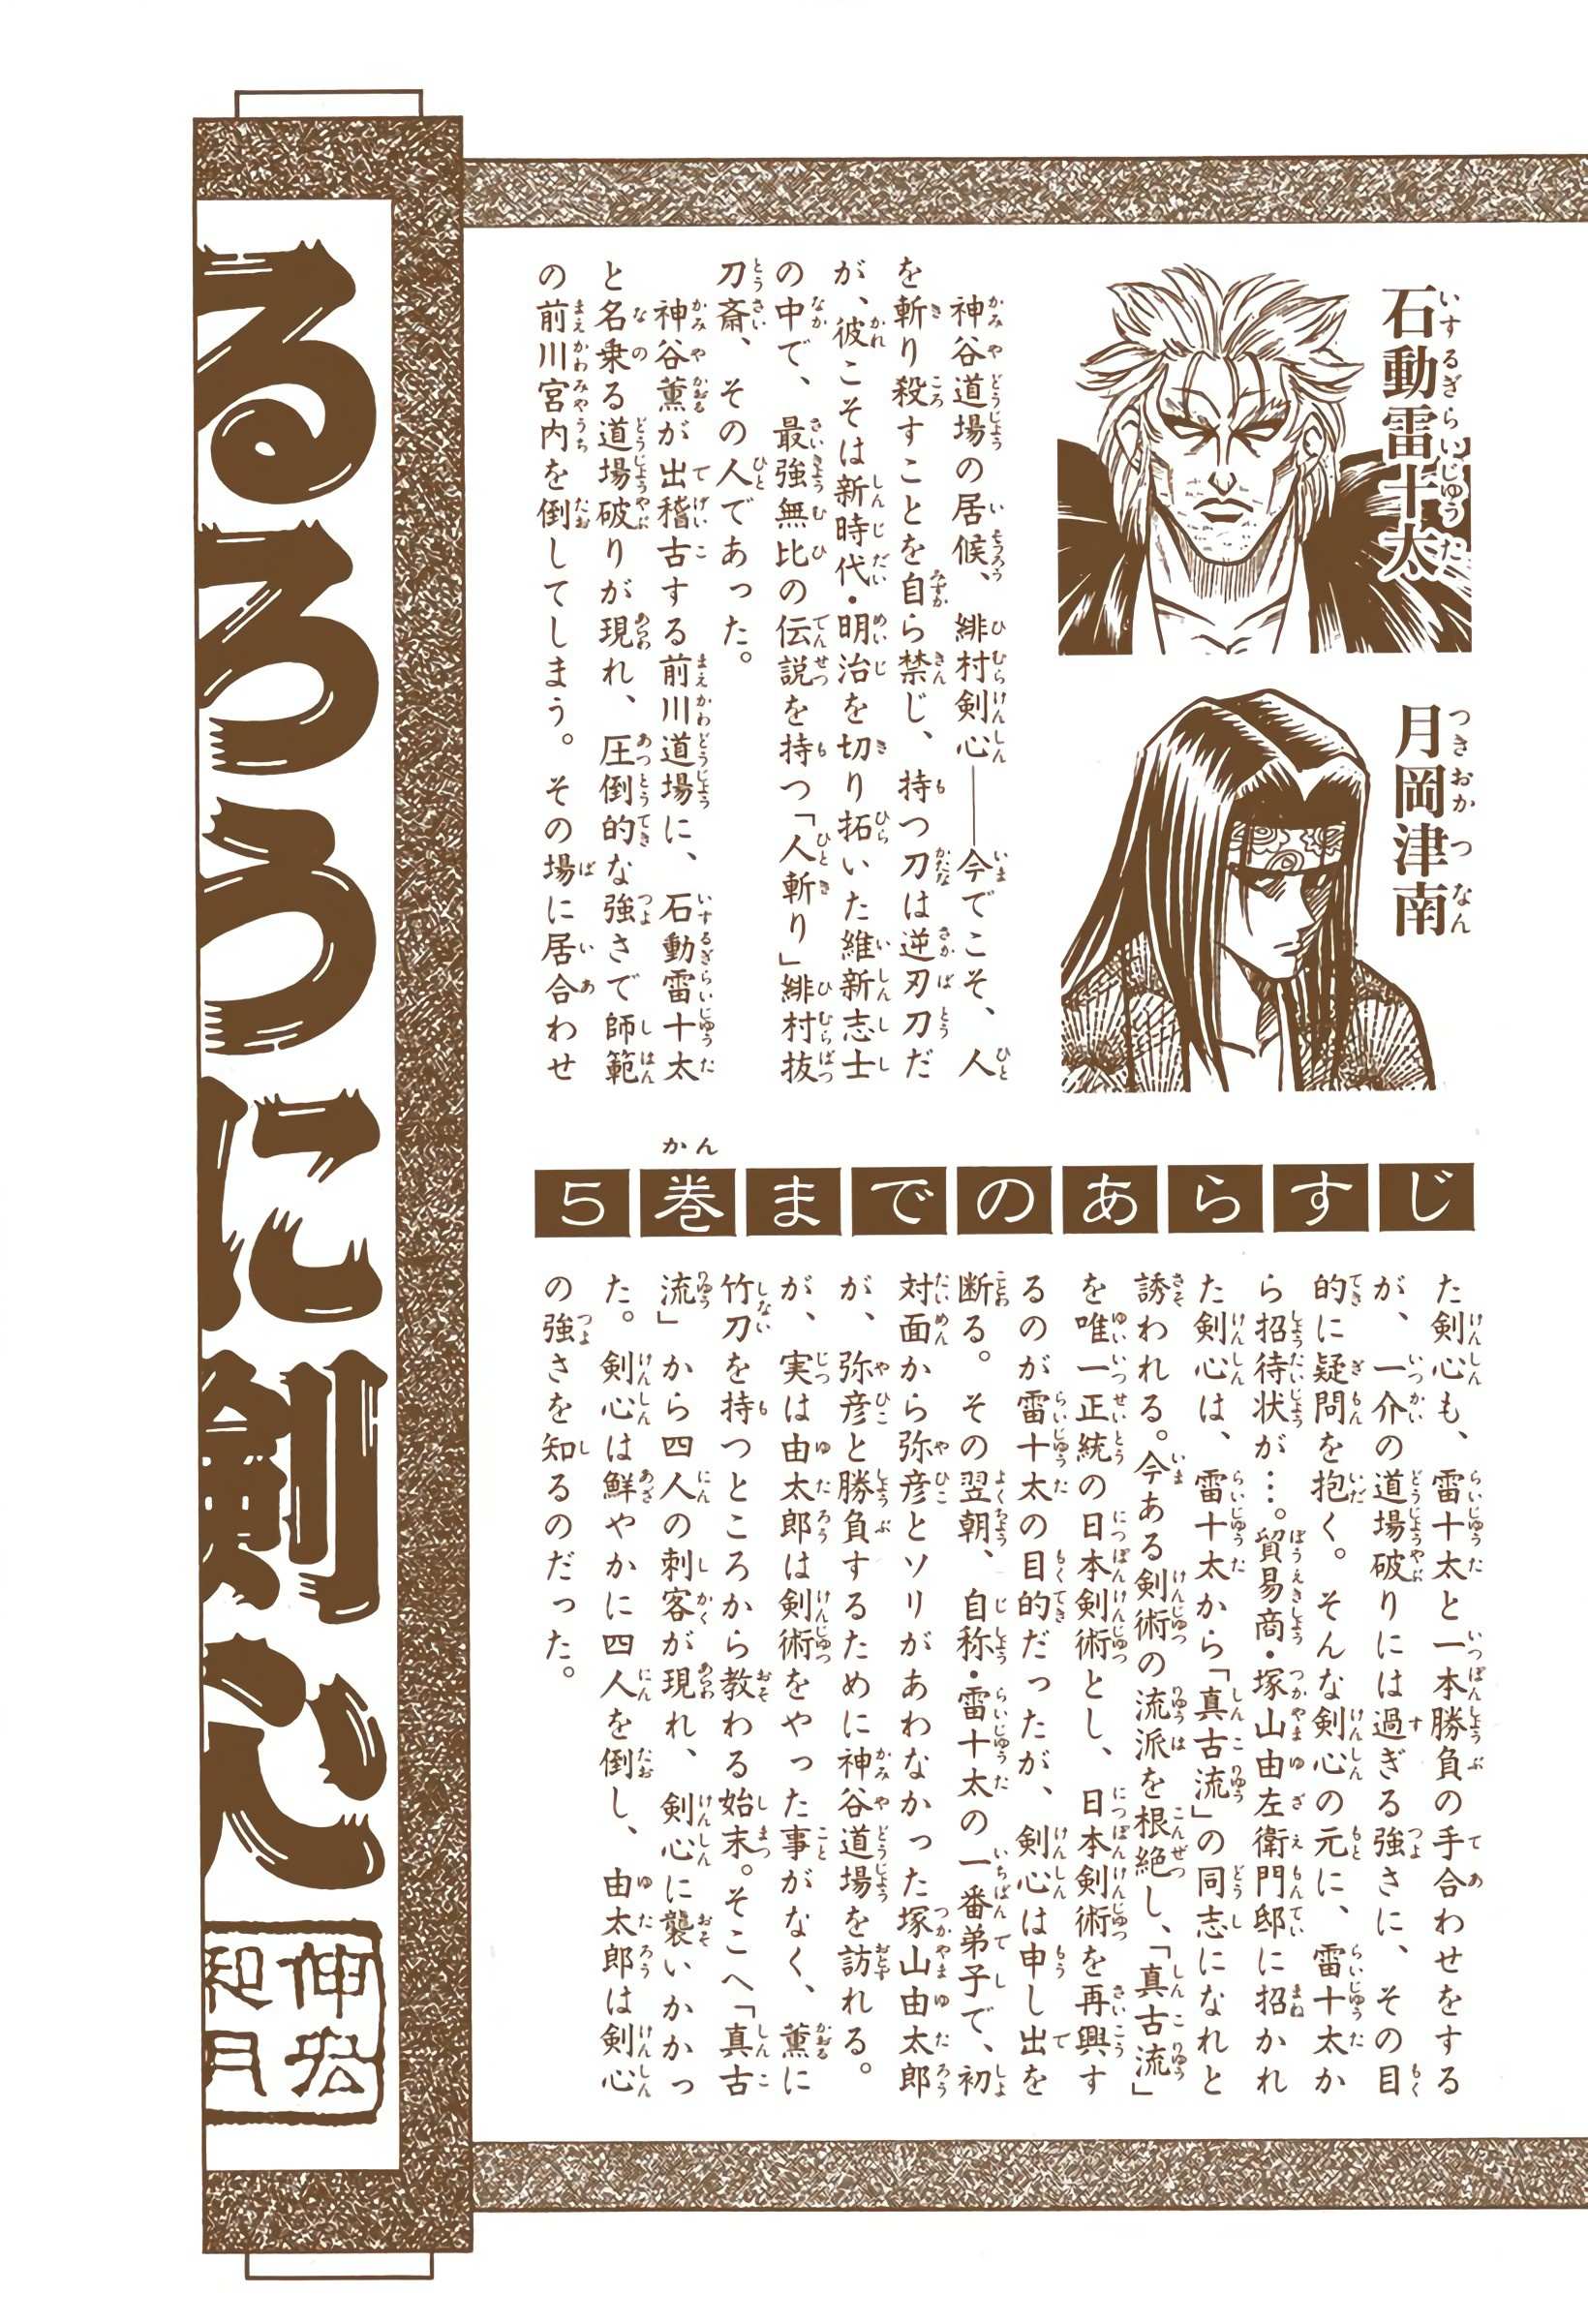 Rurouni Kenshin: Meiji Kenkaku Romantan - Digital Colored - chapter 40 - #5